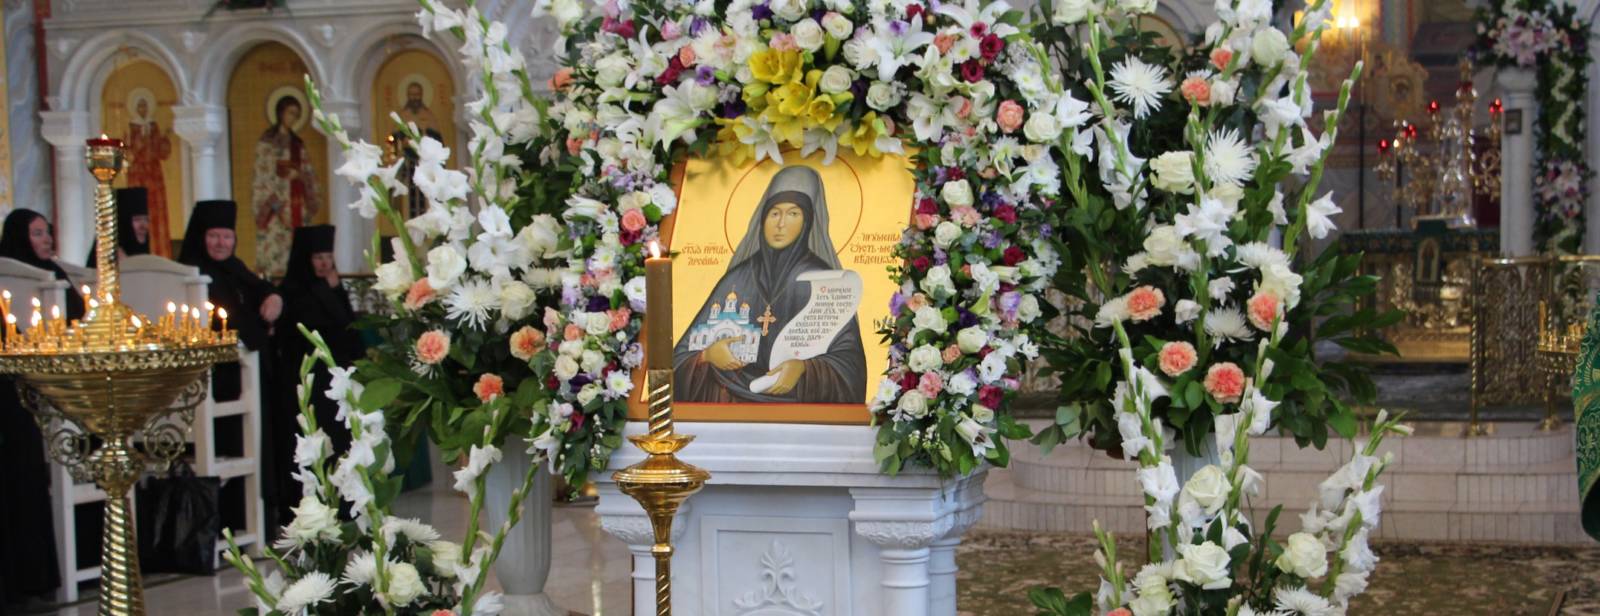 В Усть-Медведицком Спасо-Преображенском женском монастыре прошло первое церковное празднование дня памяти святой Арсении.